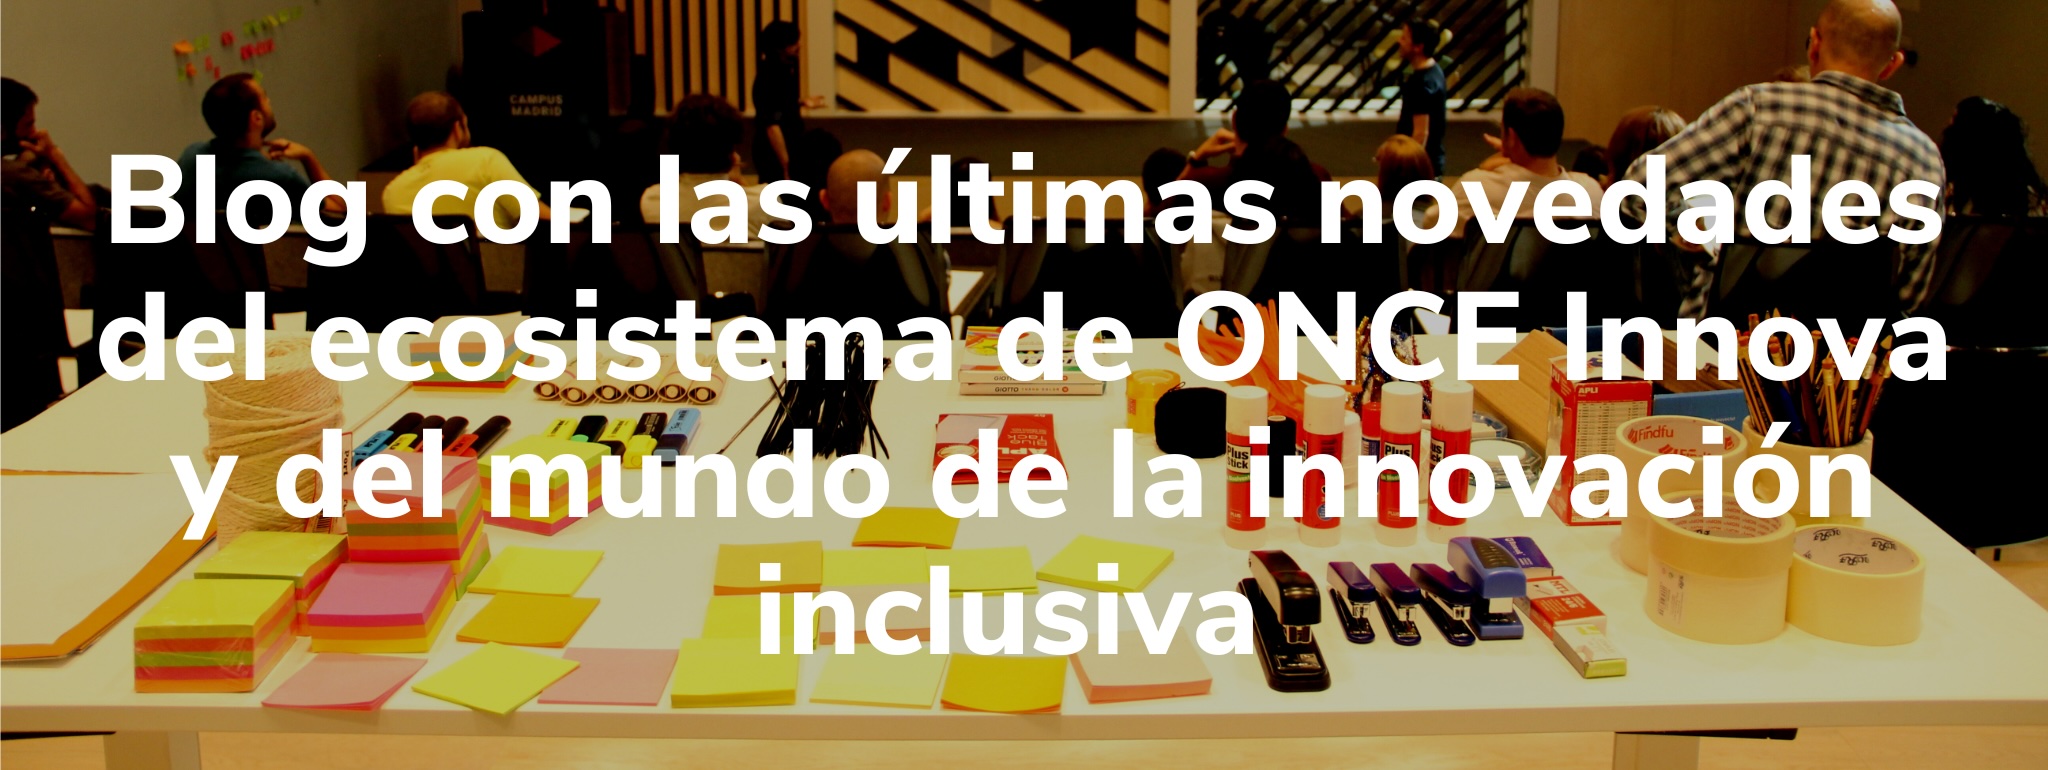 Imagen de unos postits y encima letrero que dice: Blog de con las últimas novedades del ecosistema ONCE Innova y del mundo de la innovación inclusiva